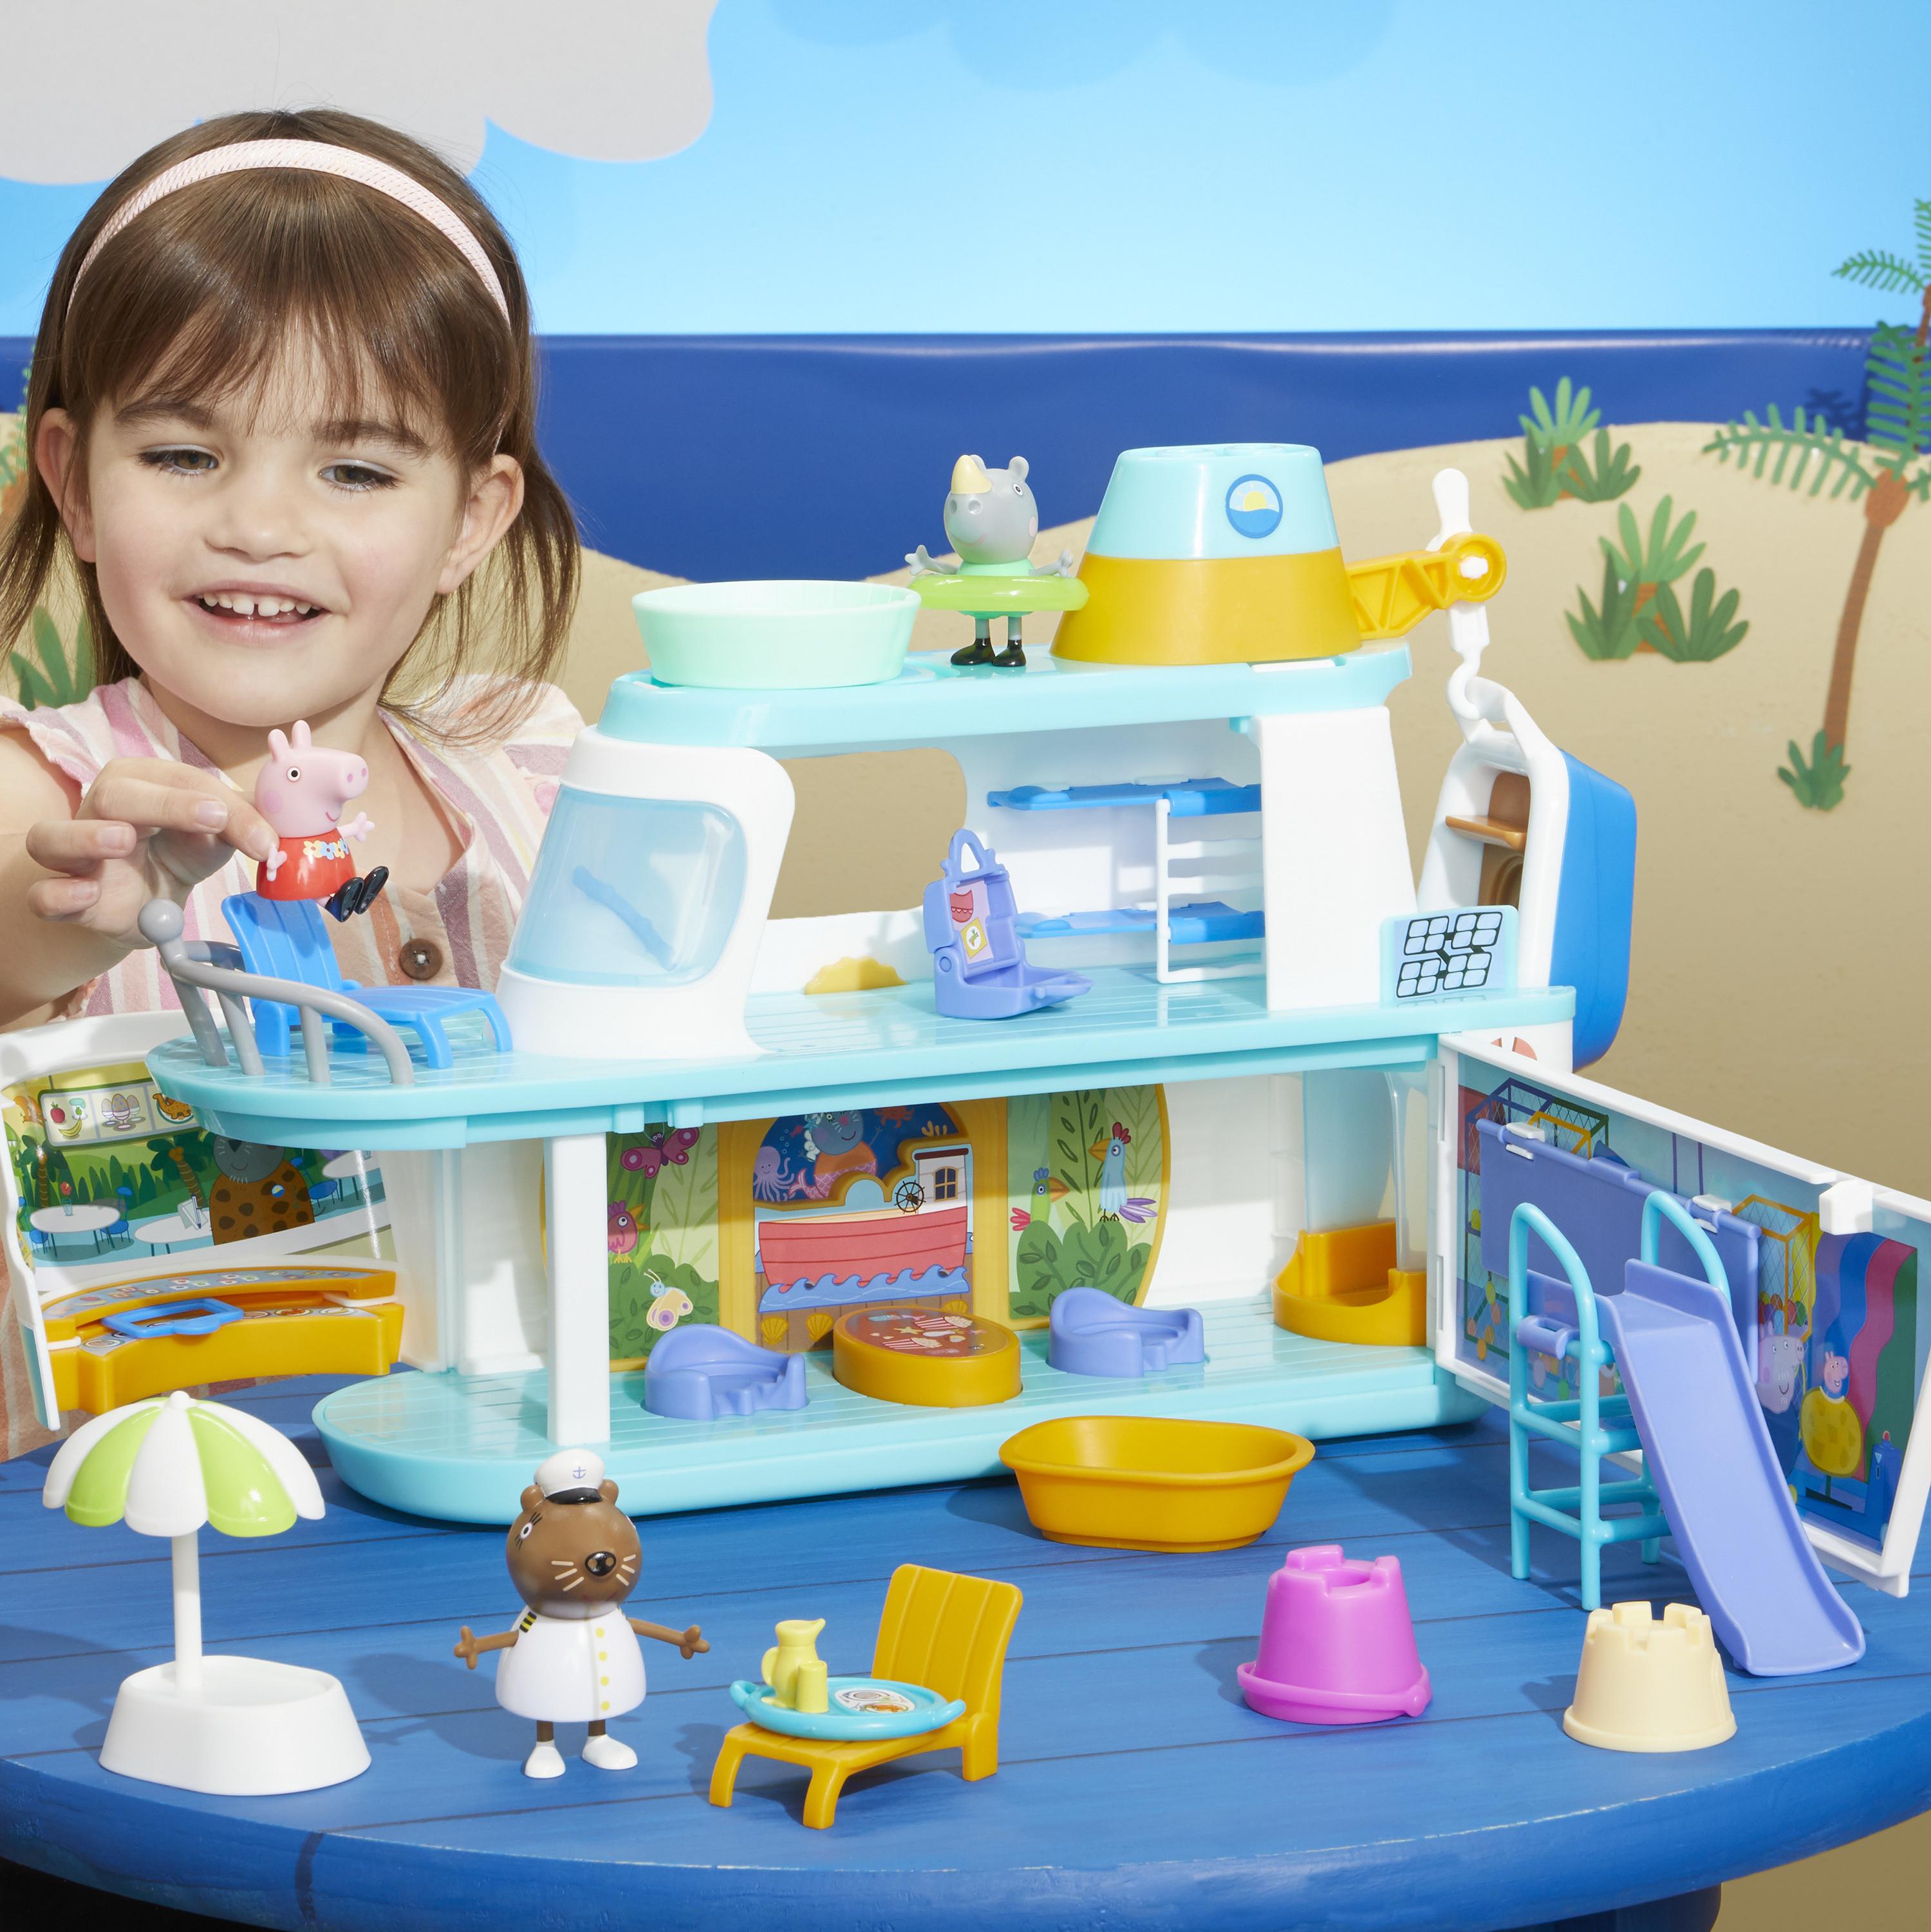 Hasbro  Peppa Pig La Crociera playset con 17 accessori, giocattoli per età prescolare 